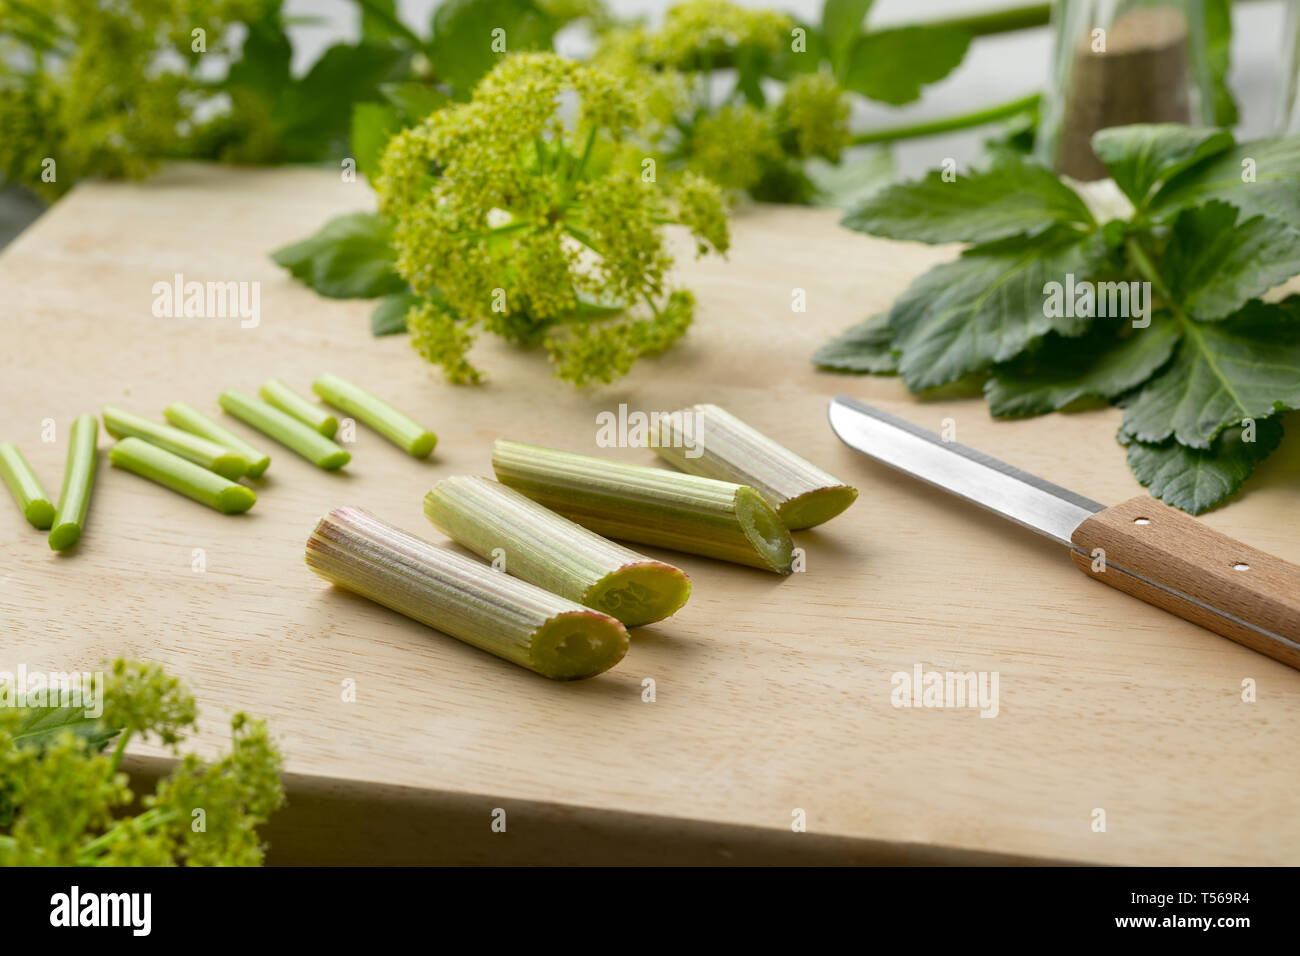 Blooming Alexanders il taglio di piante per cucinare come vegetali per la cena Foto Stock